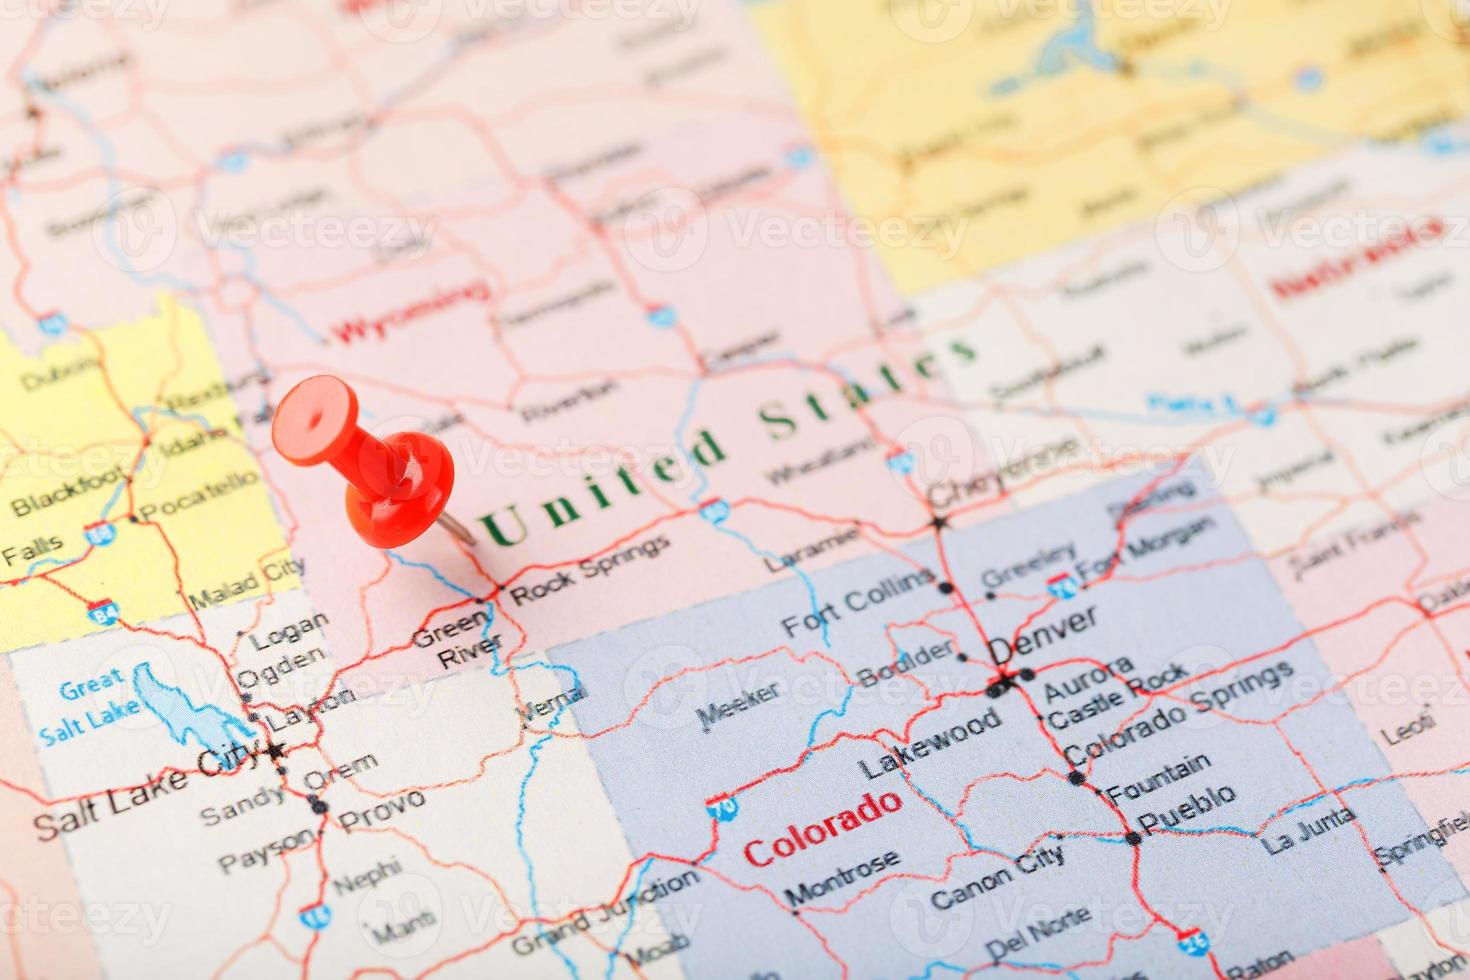 röd prästerlig nål på en Karta av förenad stater, wyoming och de huvudstad cheyenne. stänga upp Karta av wyoming med röd kryssa, oss Karta stift foto